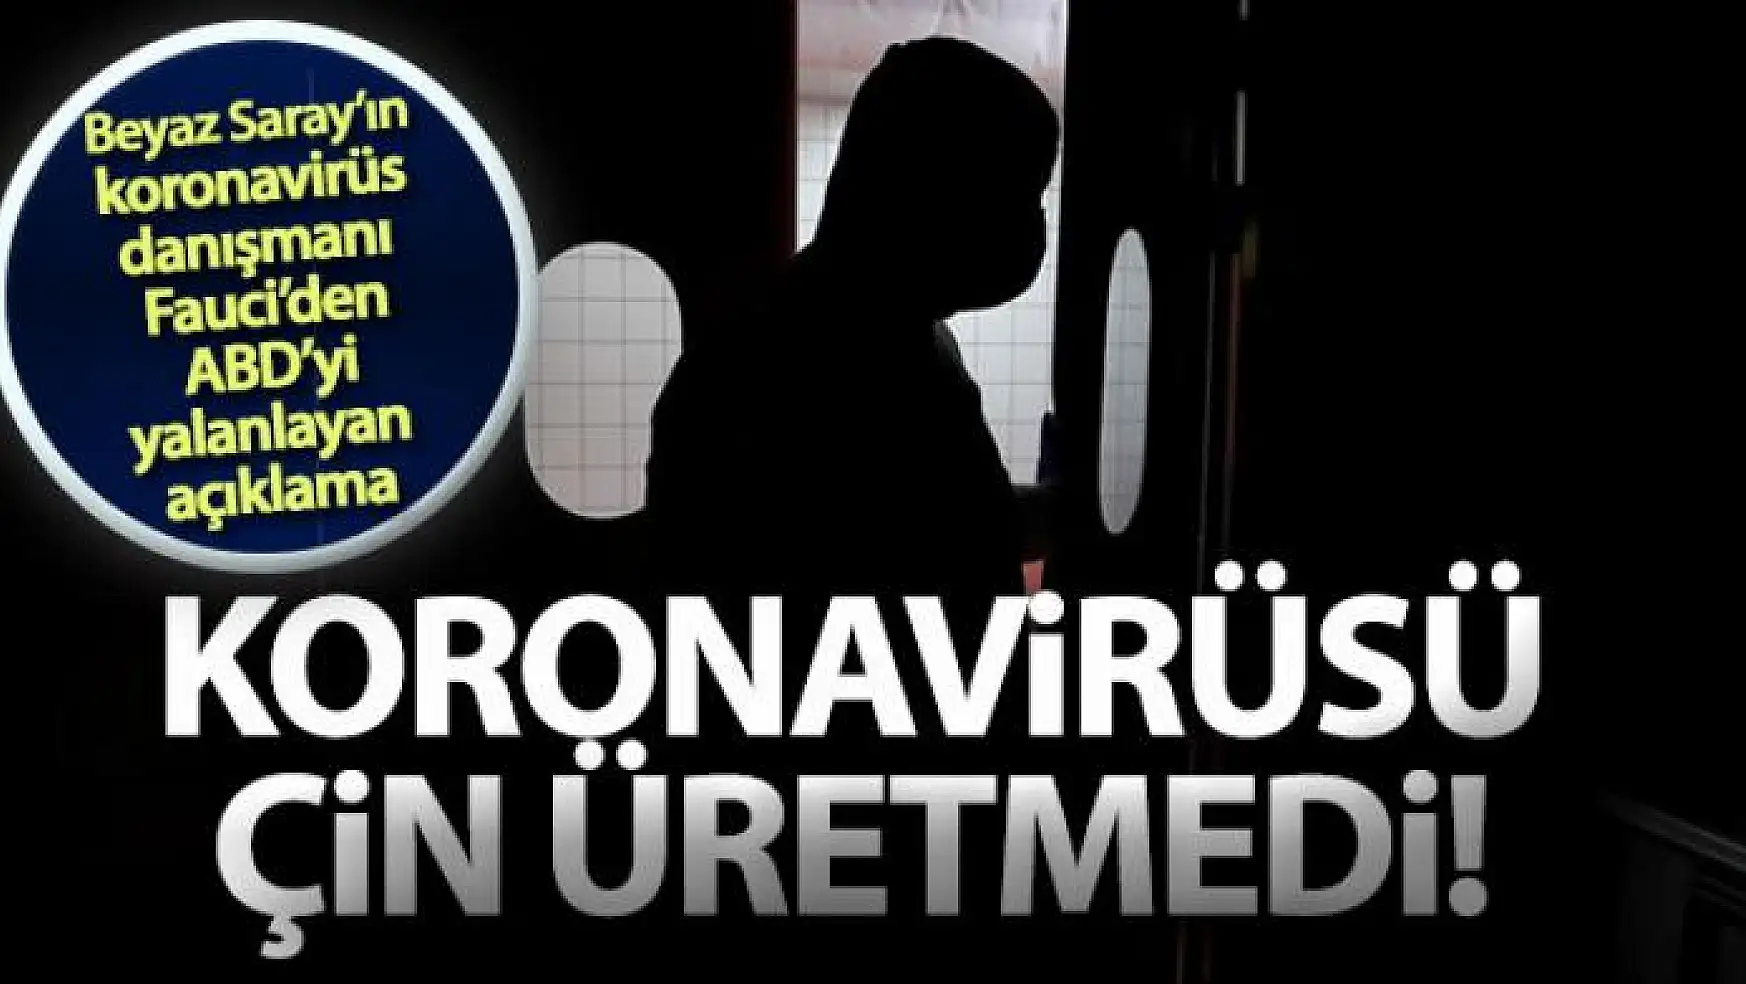 Beyaz Saray'ın koronavirüs danışmanı Fauci'den ABD'yi yalanlayan açıklama